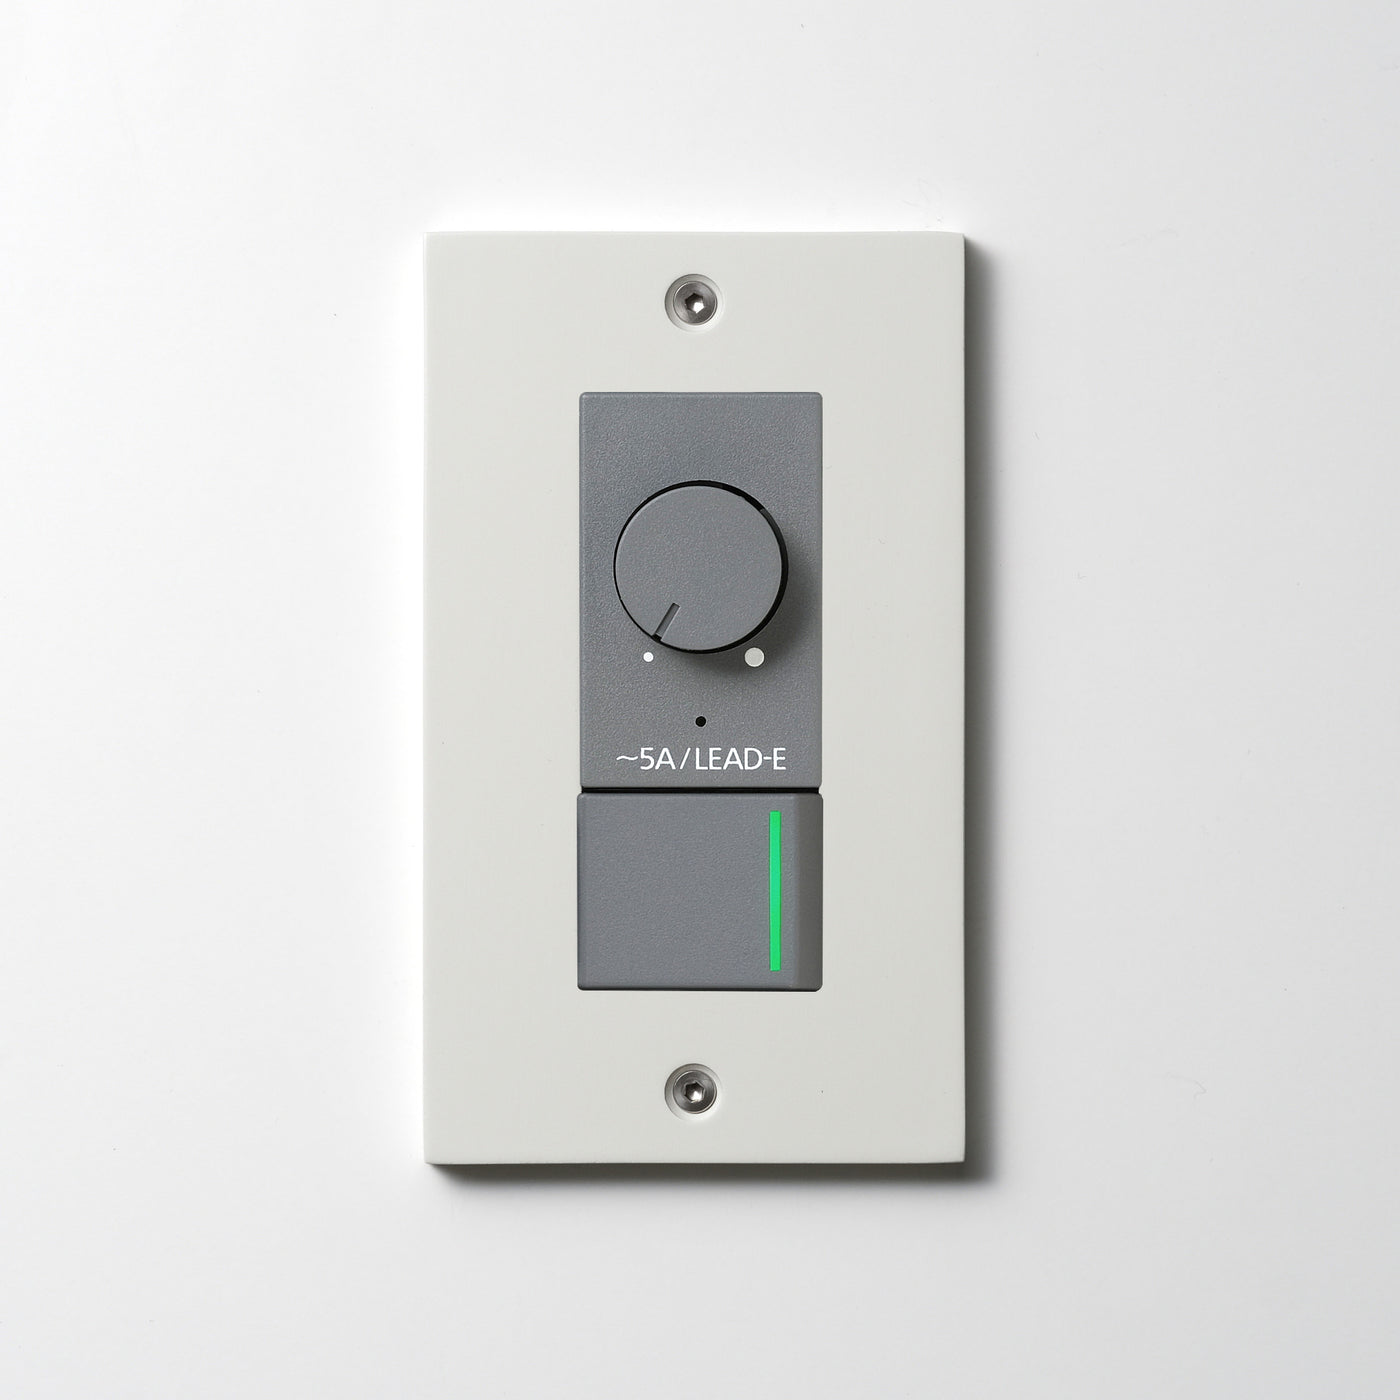 アルミダイキャスト（ホワイト）プレート  <br>+ NK 正位相制御方式ライトコントロール＋片切、3路ガイドランプ（グリーン）スイッチ　 グレー